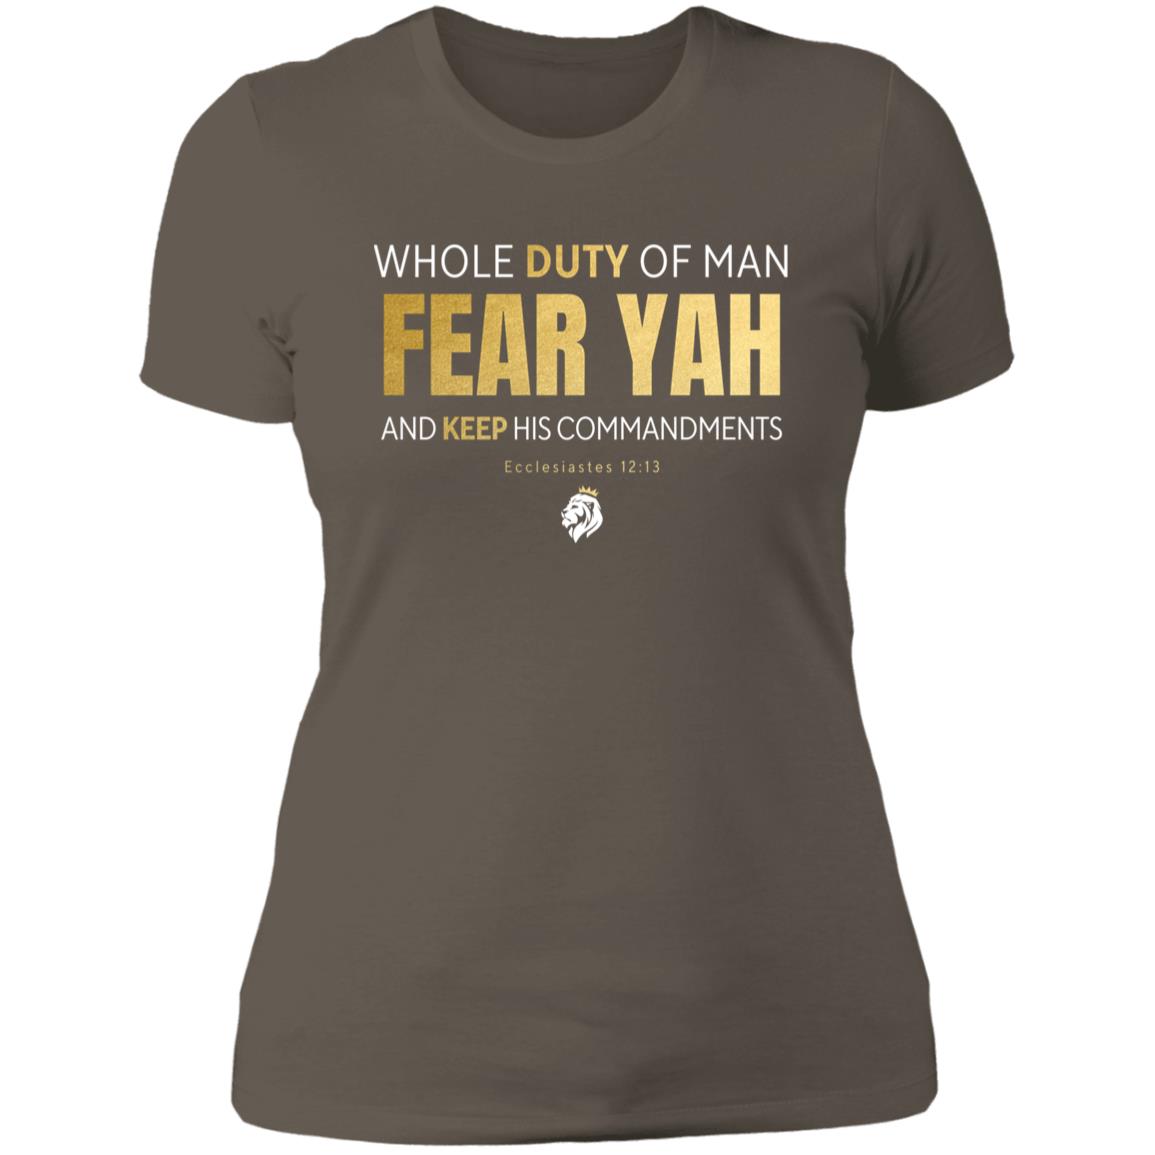 Fear YAH Gold Letter Ladies'  T-shirt